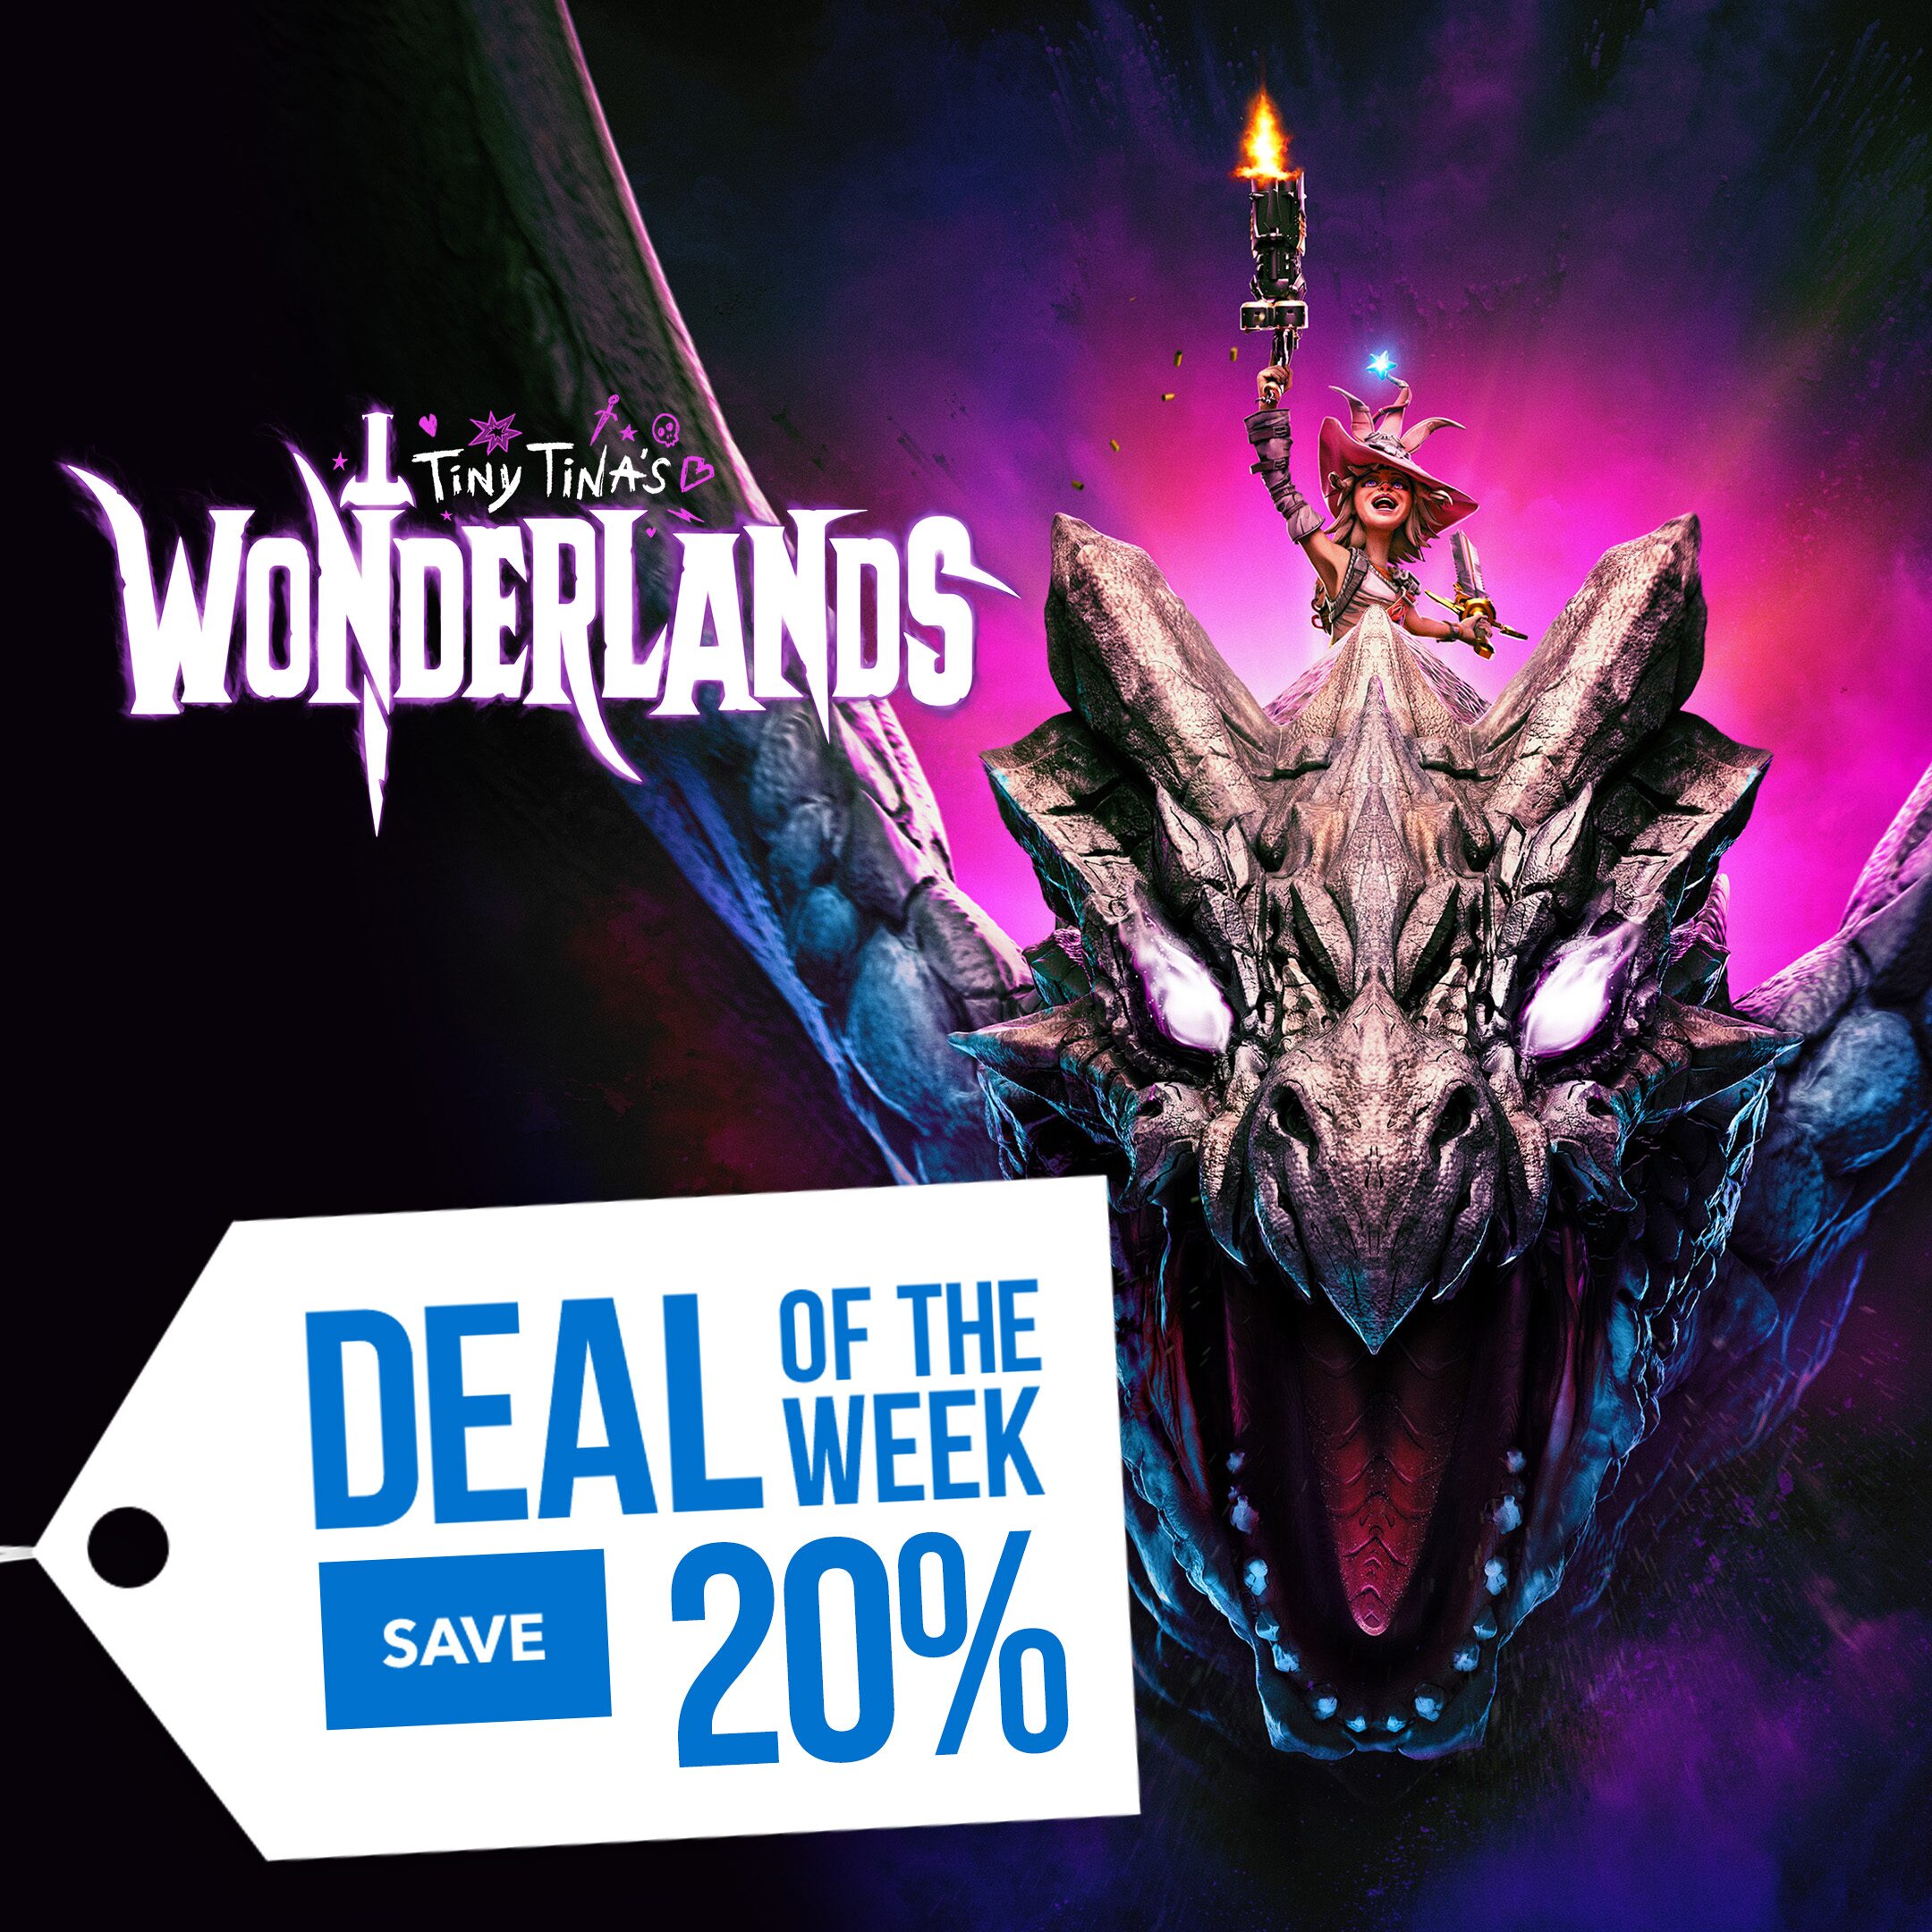 [PROMO] Deal of the Week - Tiny Tinas Wonderland